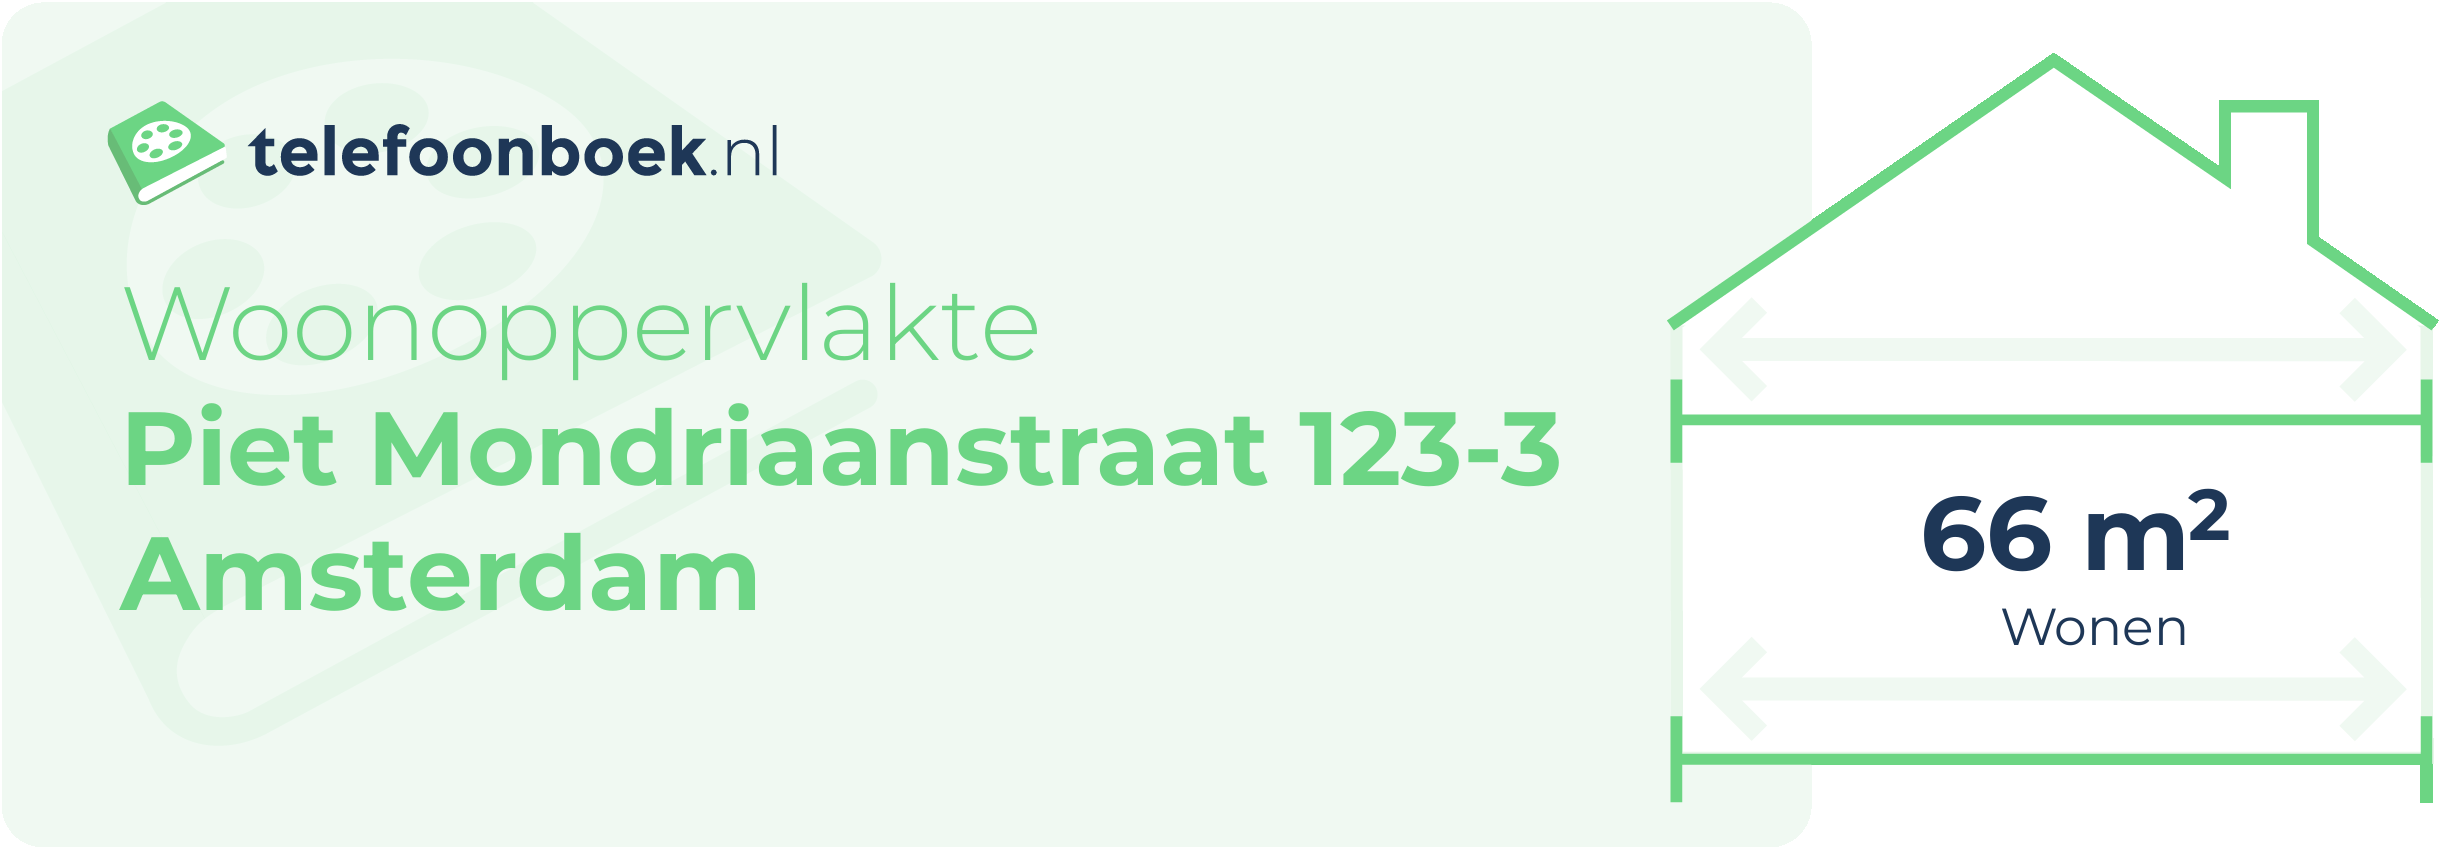 Woonoppervlakte Piet Mondriaanstraat 123-3 Amsterdam